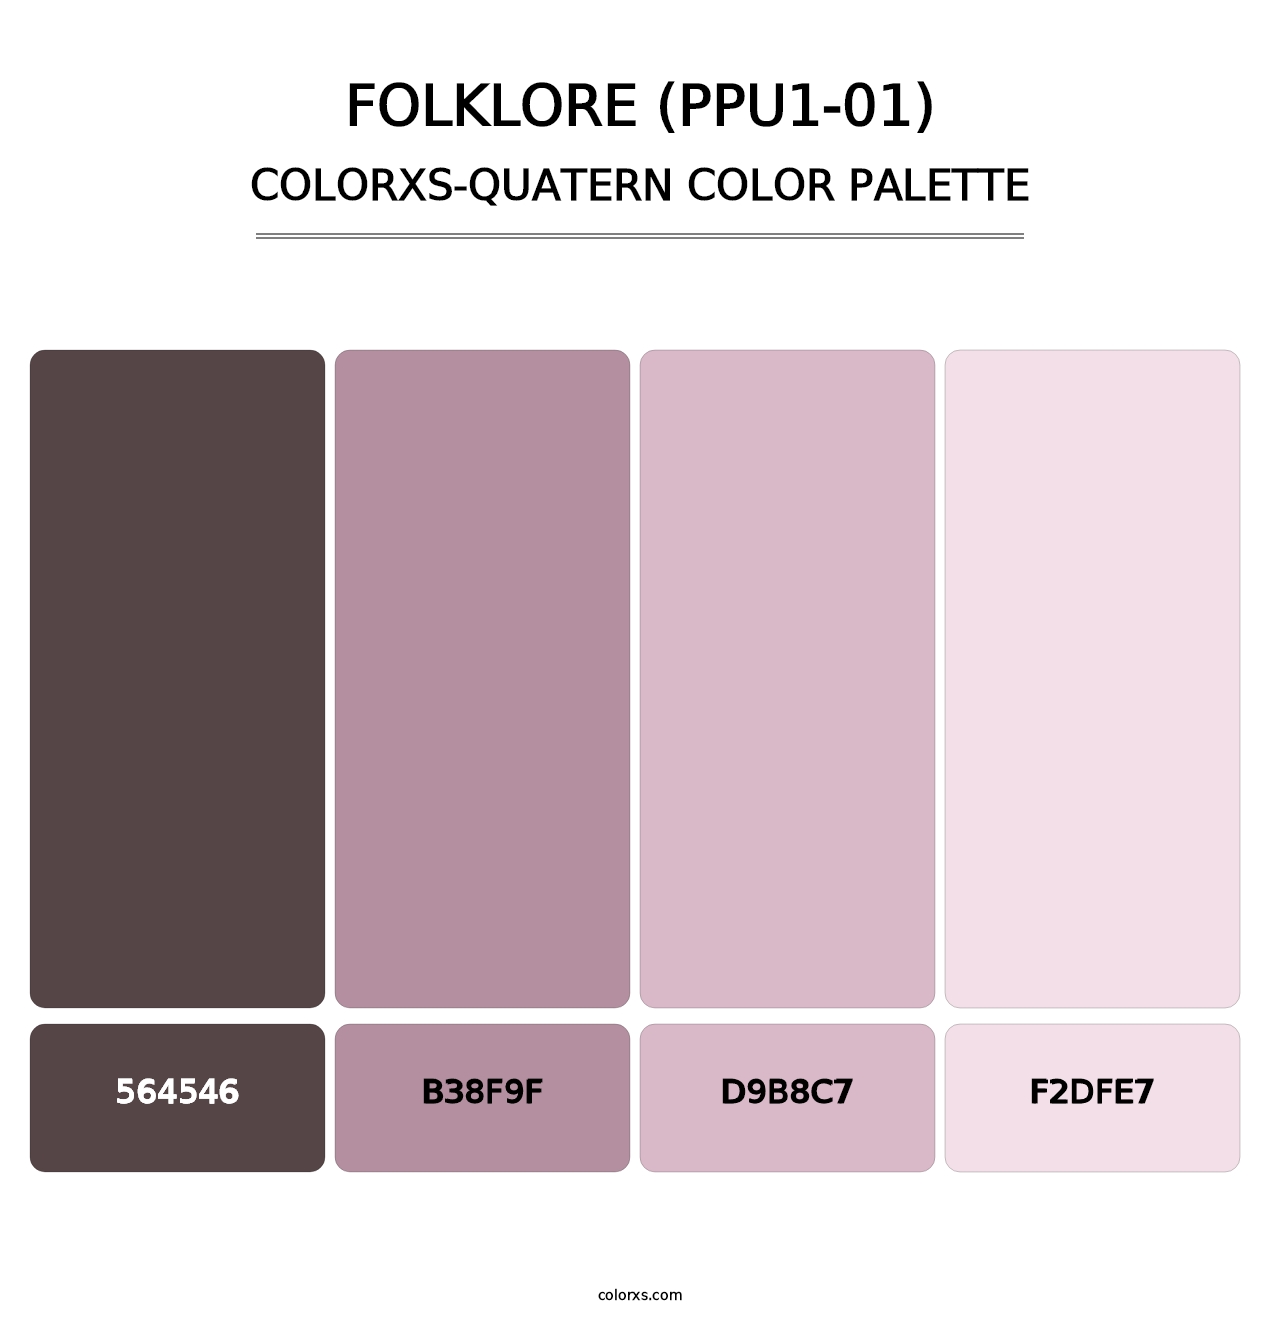 Folklore (PPU1-01) - Colorxs Quatern Palette